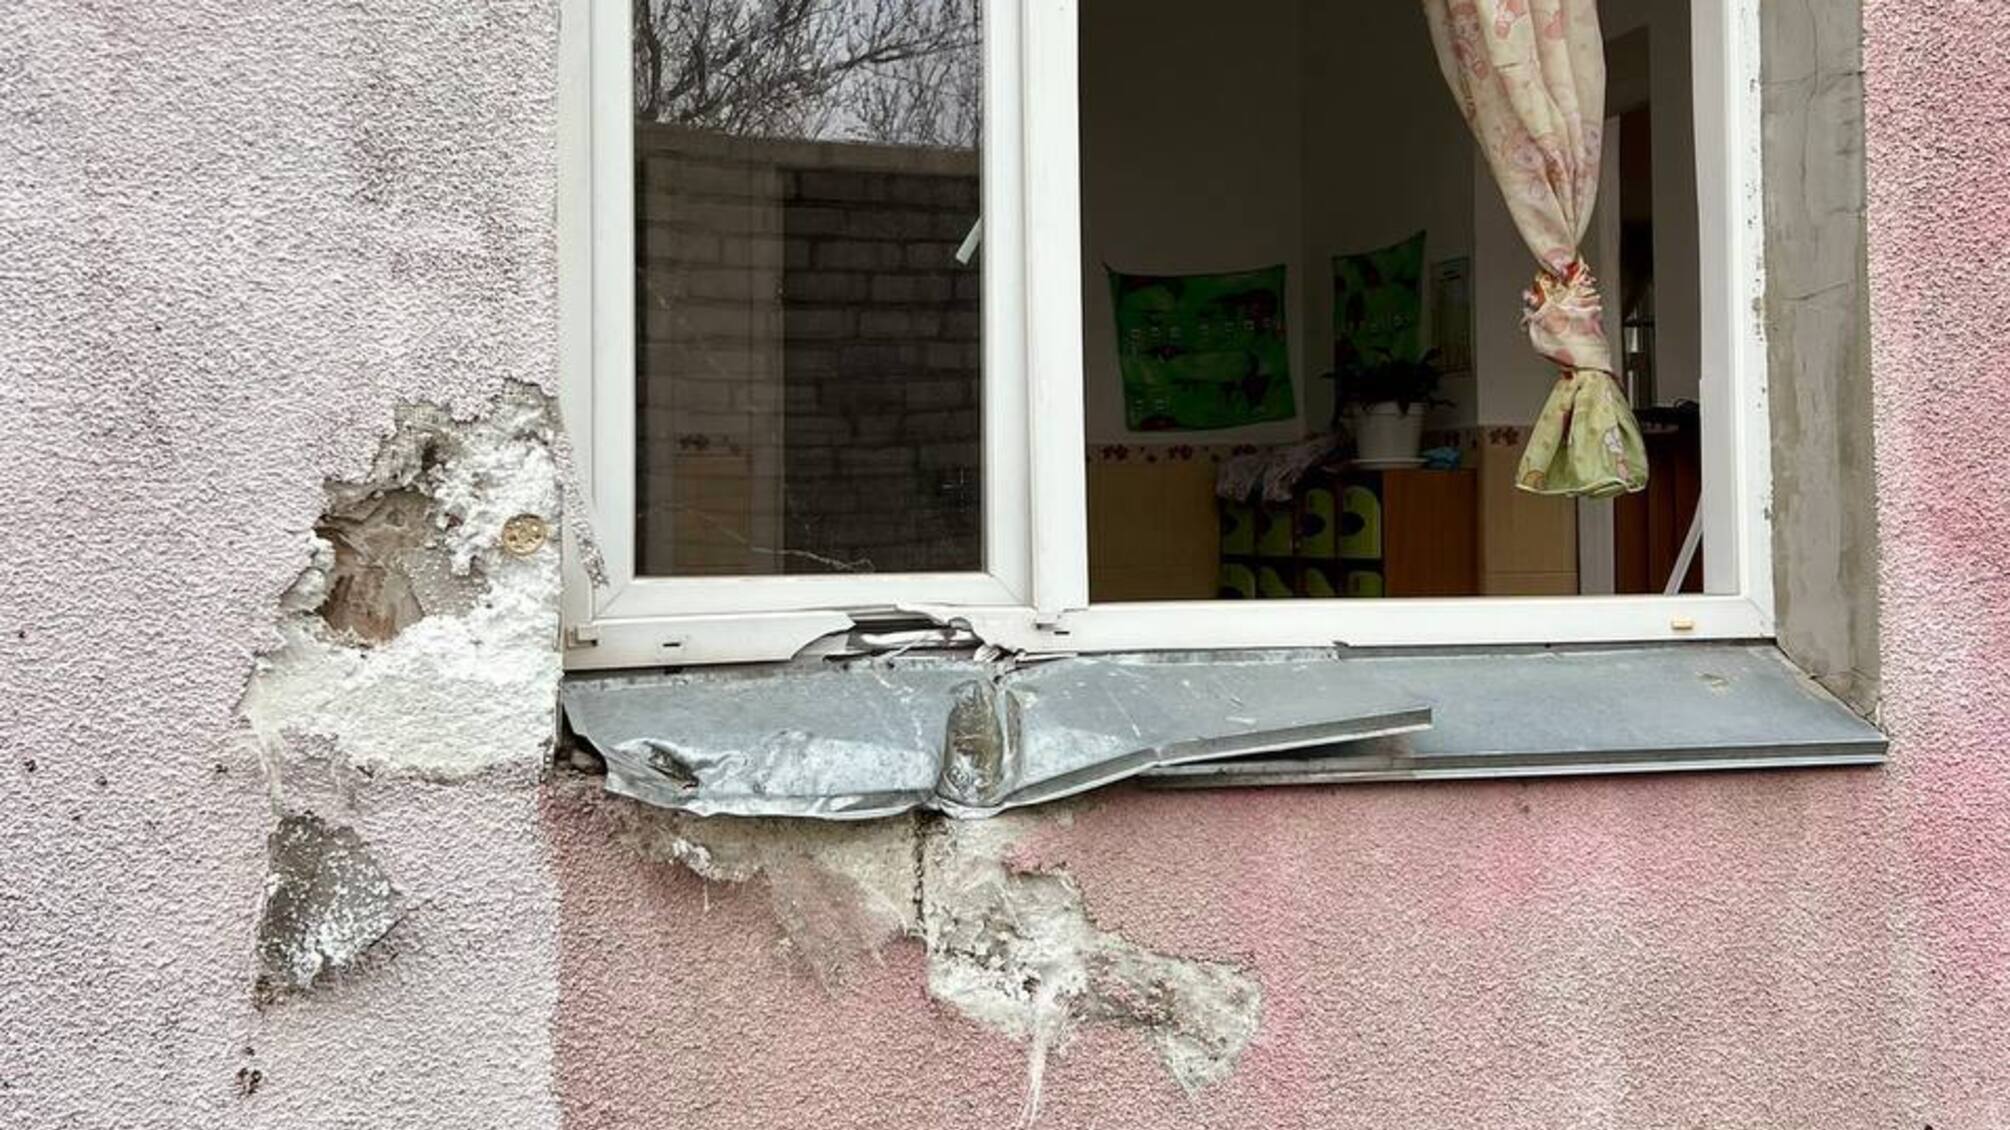 Ракета рф попала в детский сад - горсовет Николаева (фото)